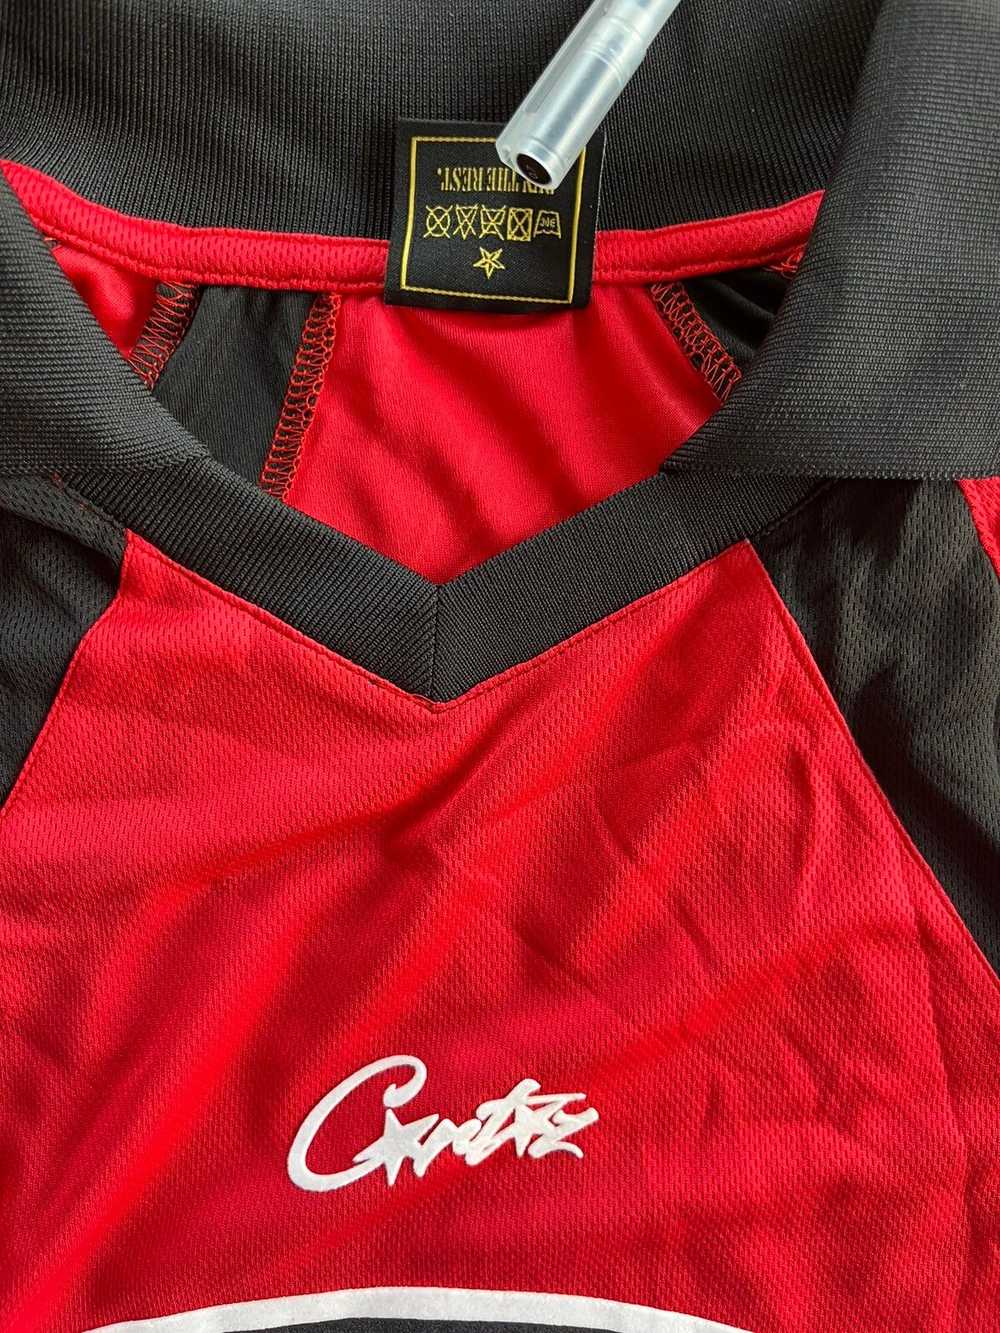 Corteiz Cortiez - RTW red jersey - image 4